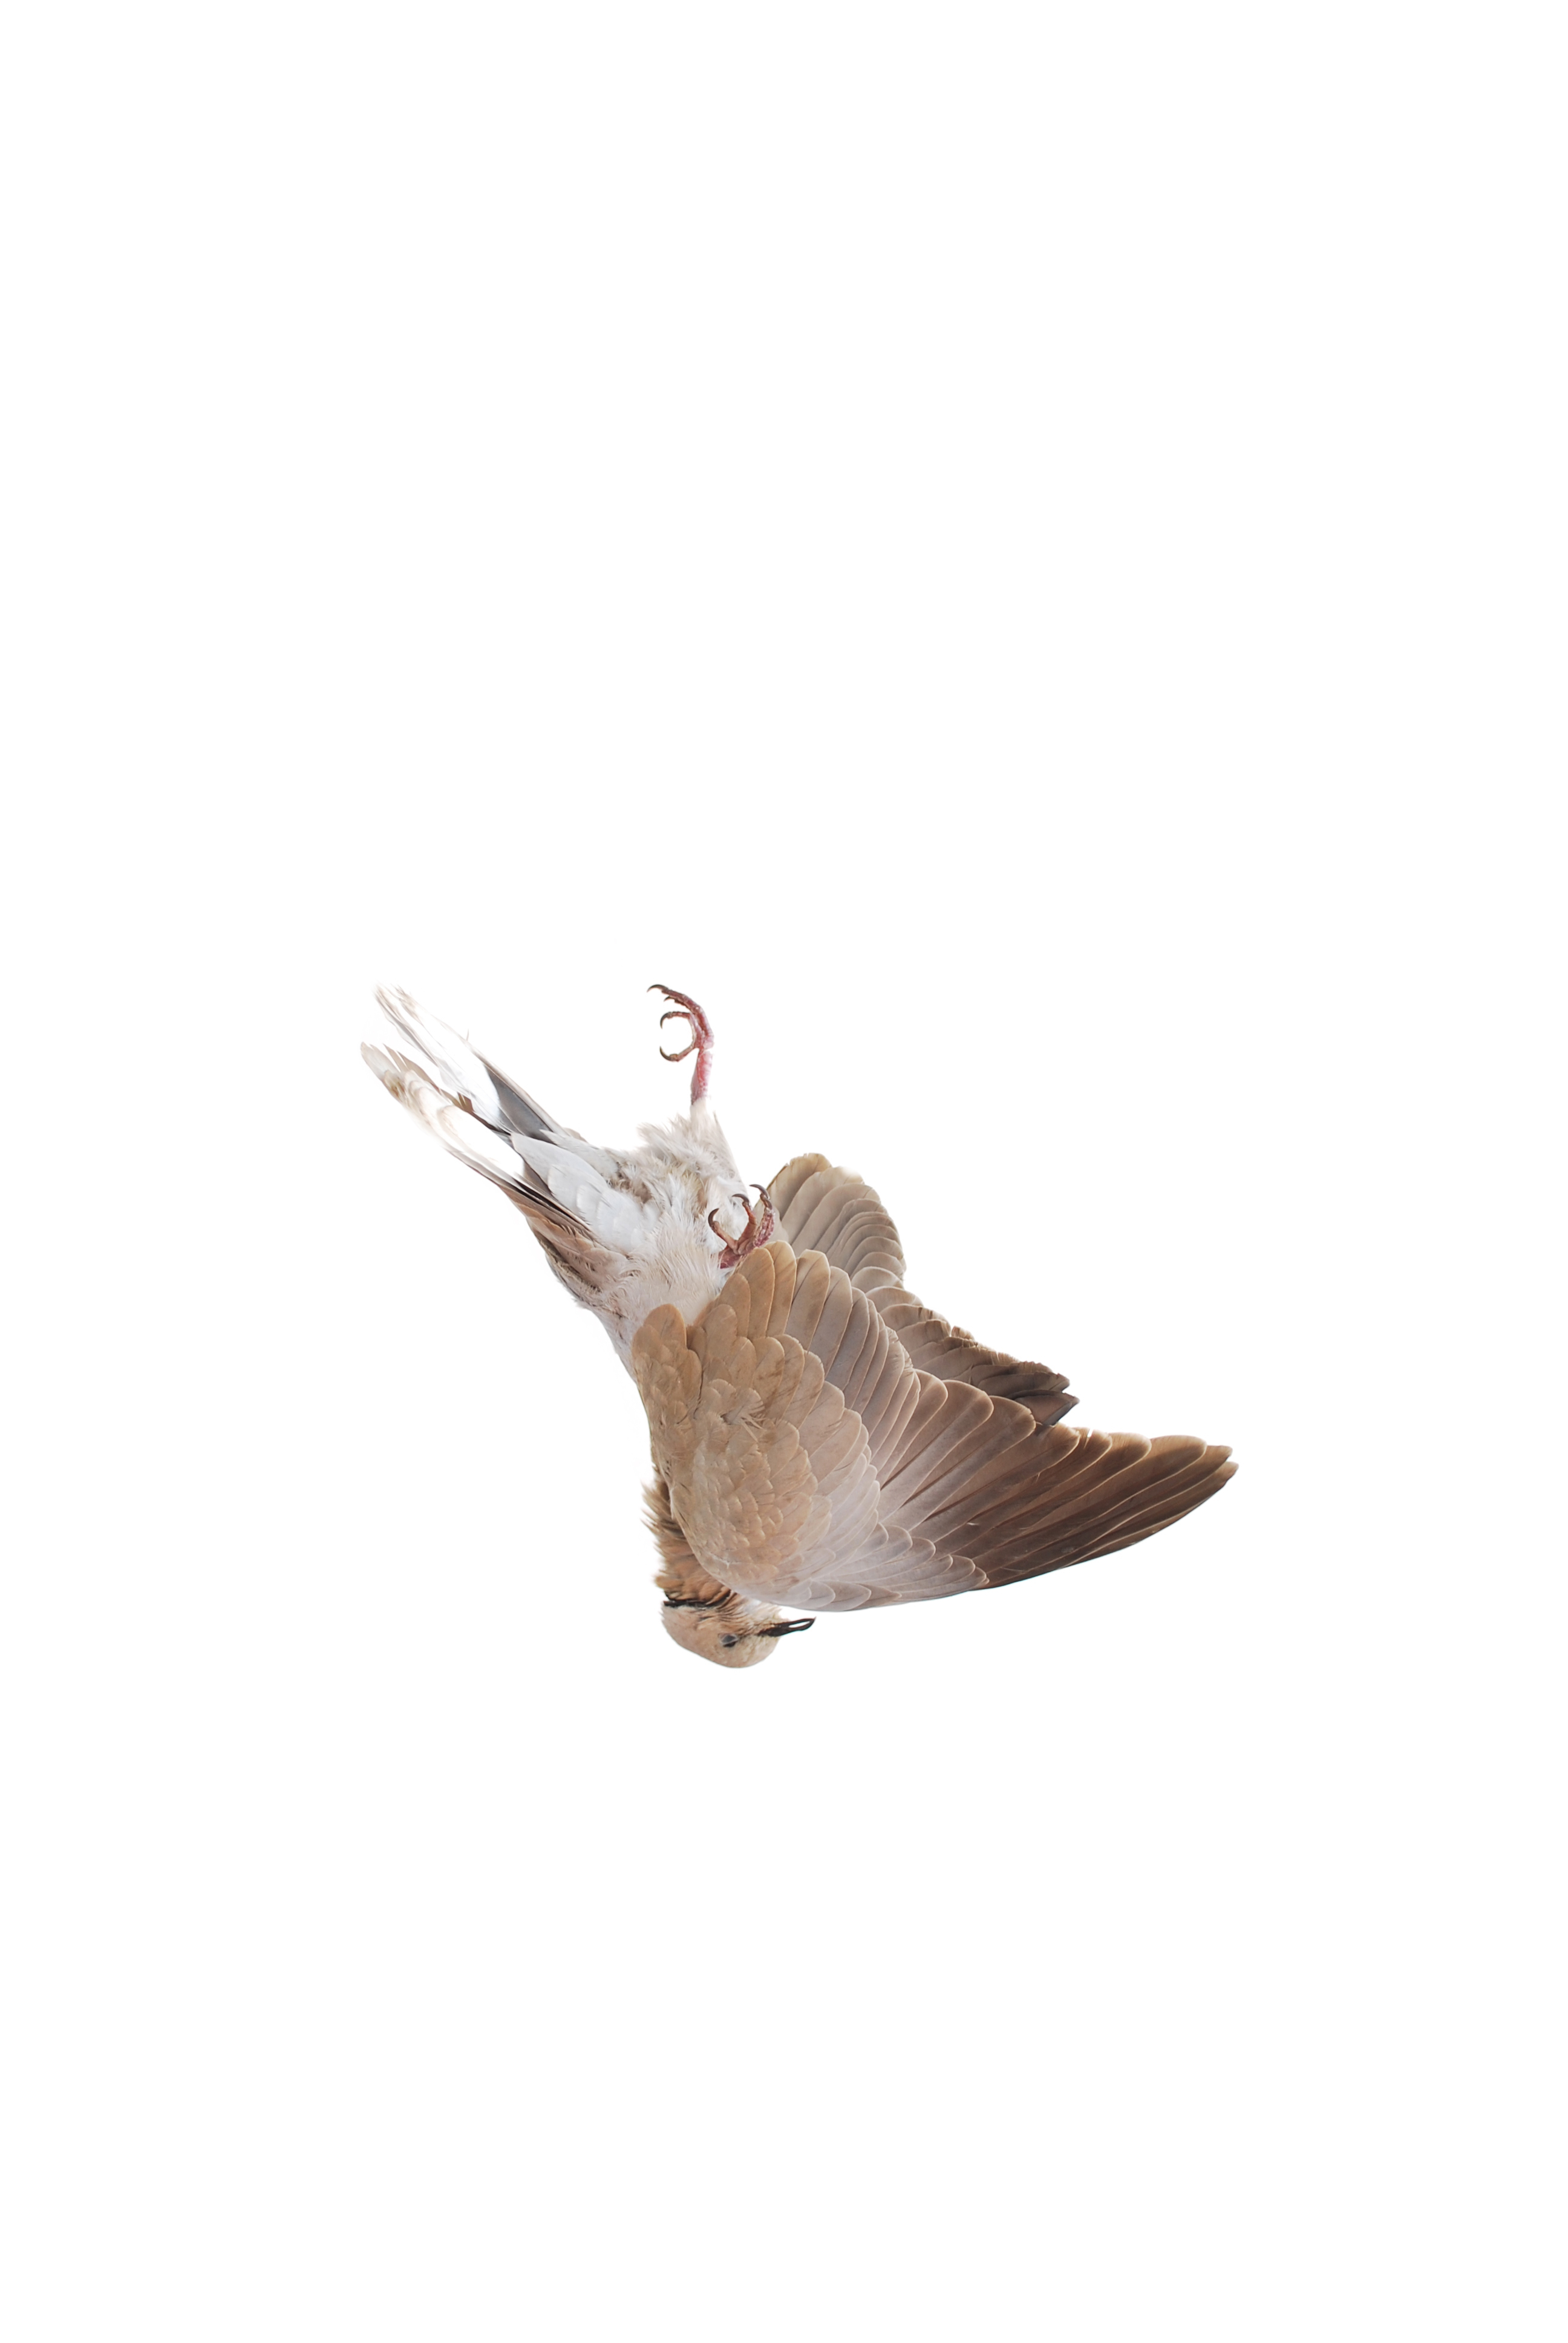 Falling bird. Животные с крыльями Эстетика. Шаттерсток Фотобанк изображений птиц. Эстетичная птица с вырезанным фоном. Fallen Bird Prince Canary.